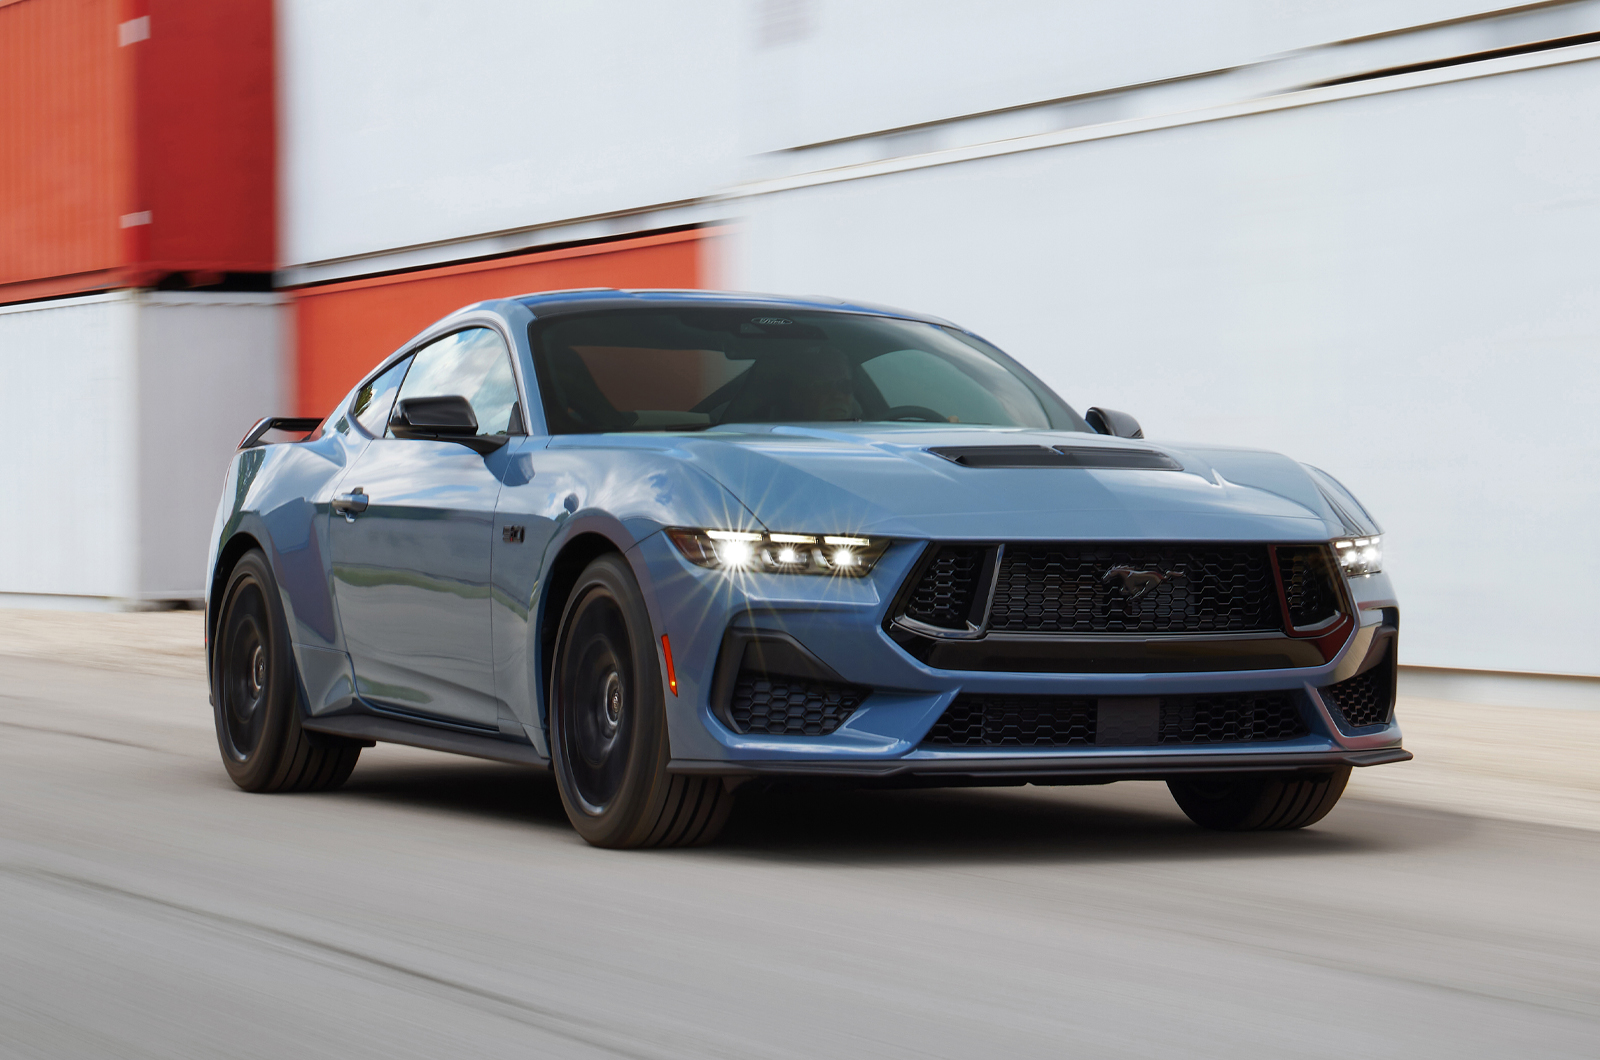 Ford Mustang 2023 baru mempertahankan atmo V8 dan transmisi manual